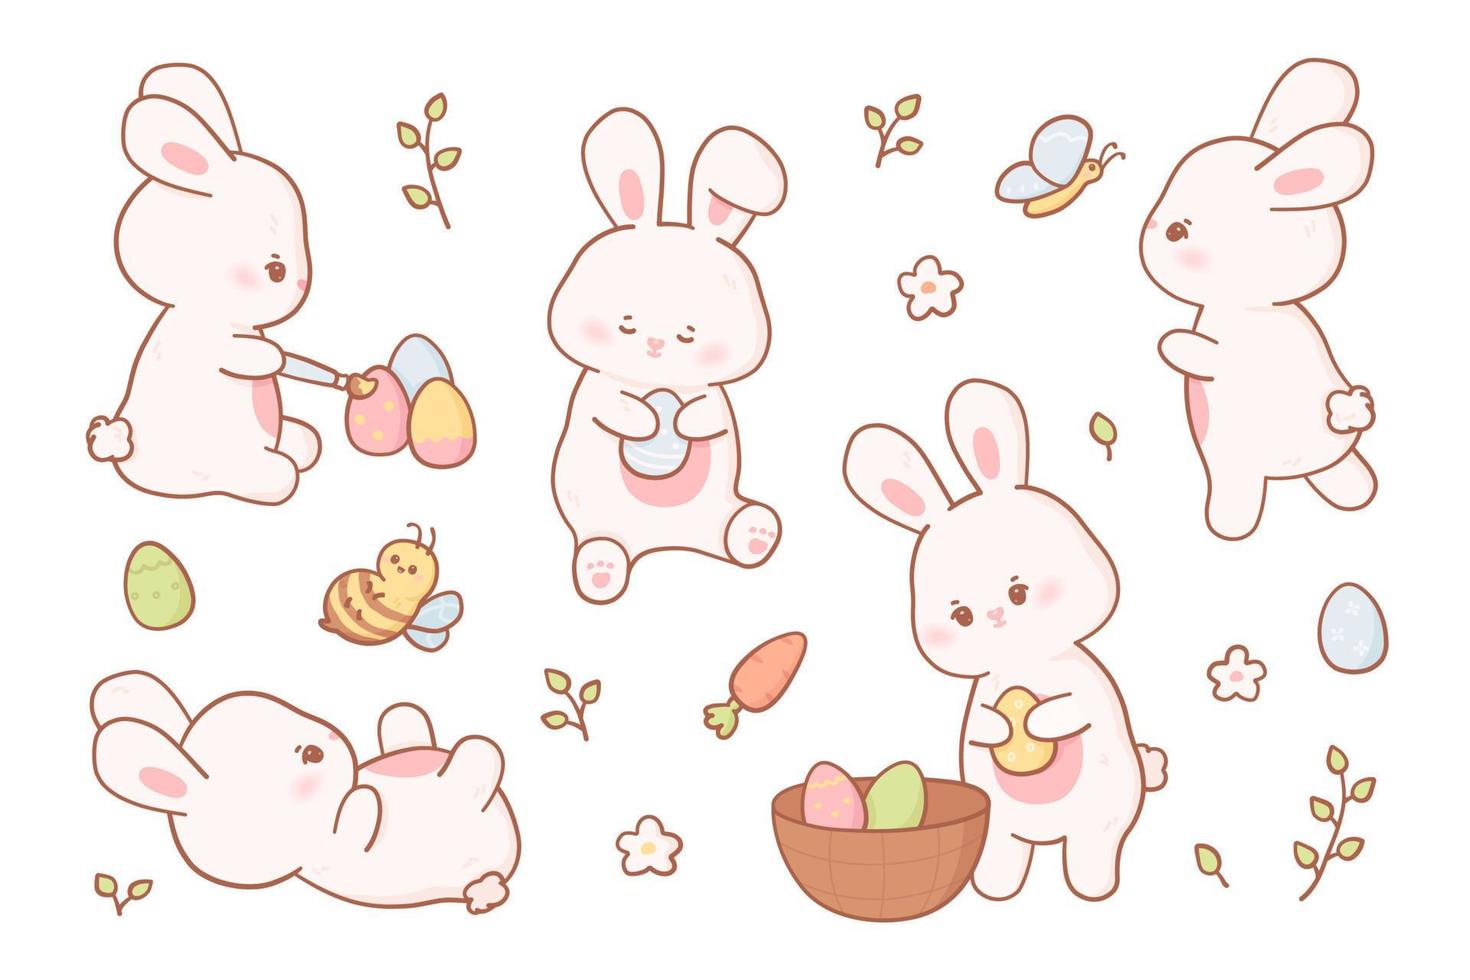 Pasen konijn in kawaii stijl en pastel kleuren. vector verzameling van tekenfilm konijnen in verschillend poses met eieren, bij en vlinder